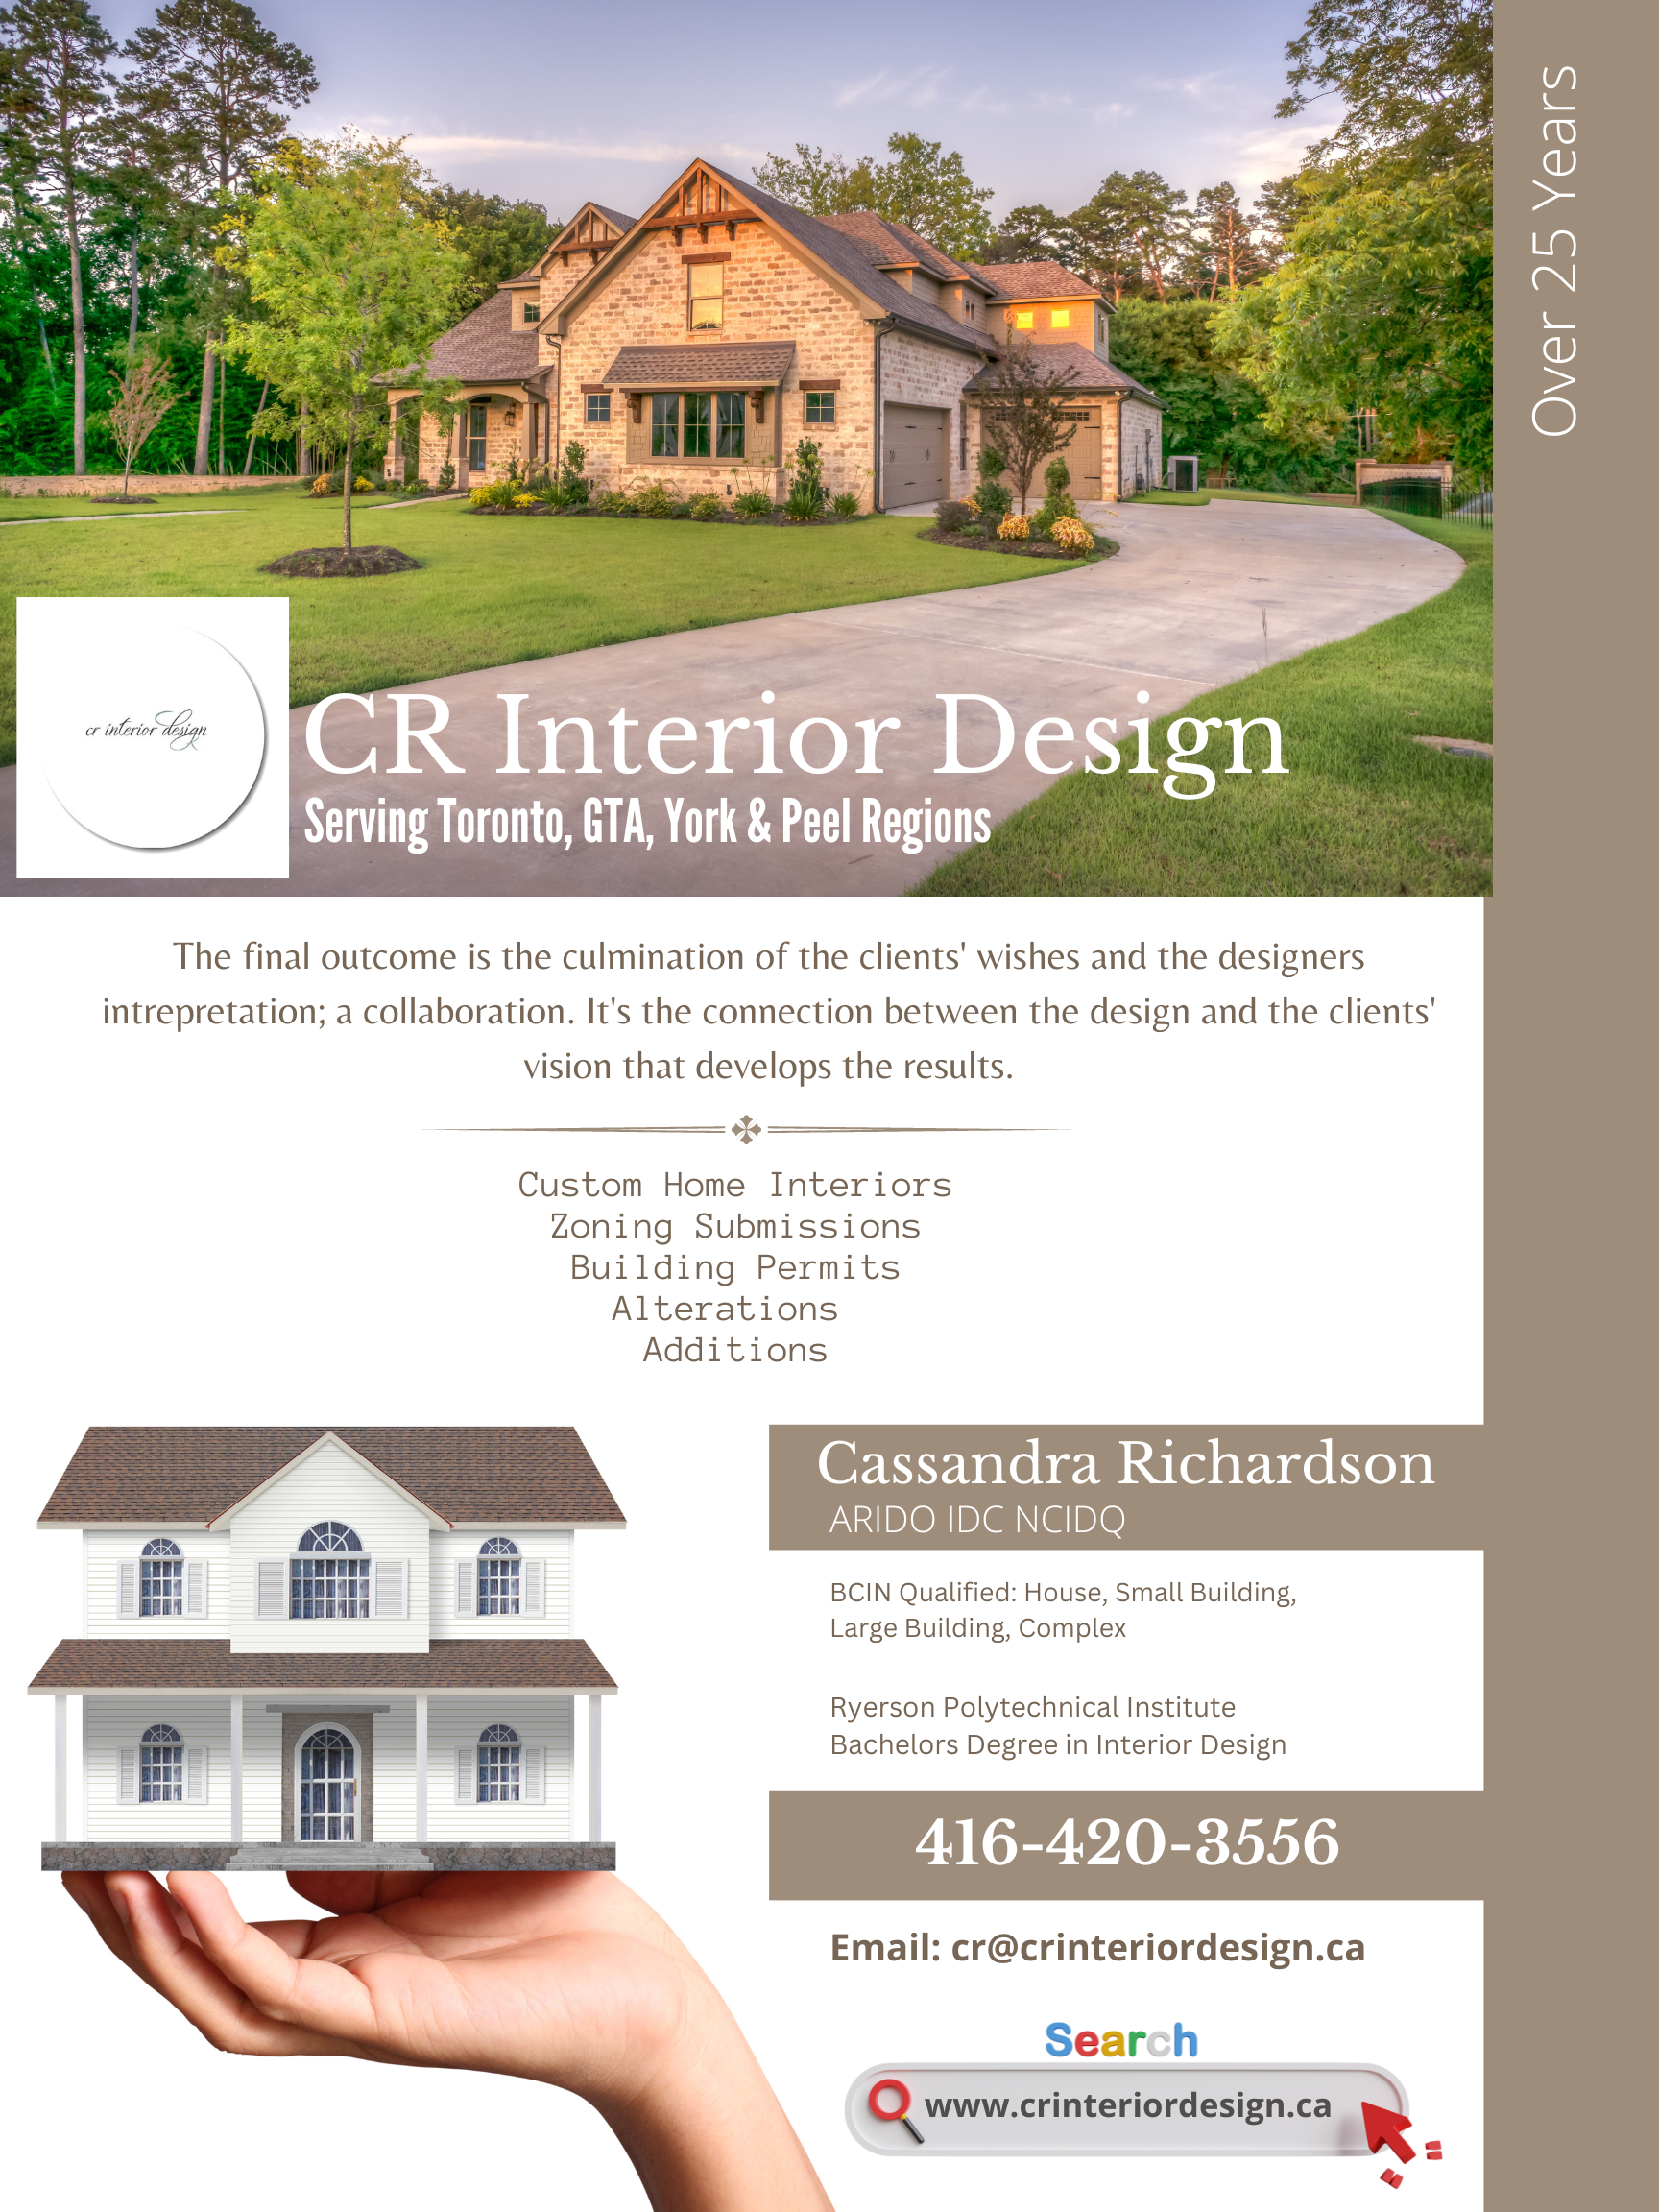 Visit CR Interior Design